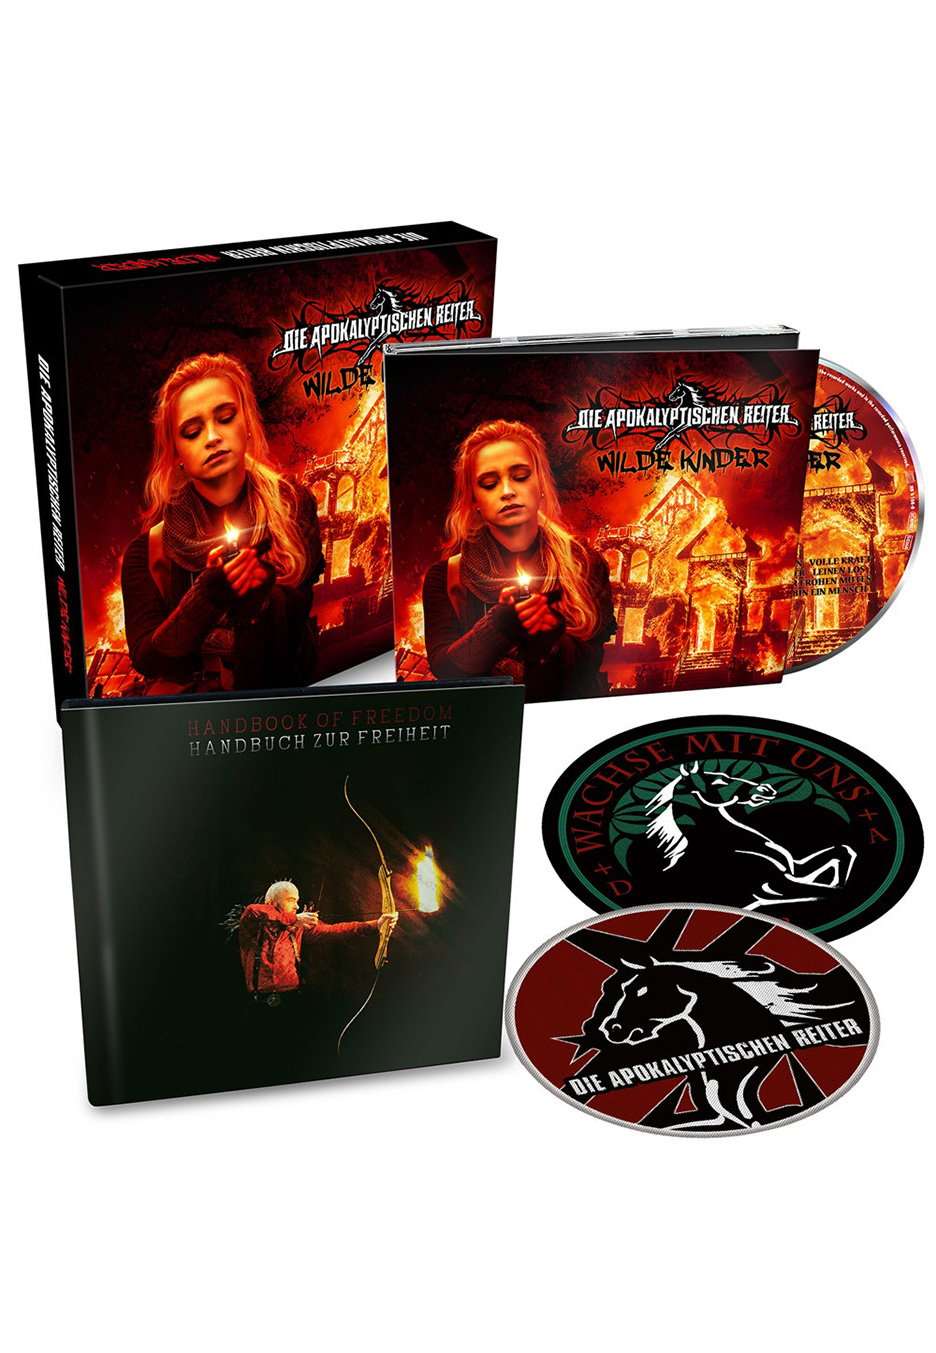 Die Apokalyptischen Reiter - Wilde Kinder - CD Boxset